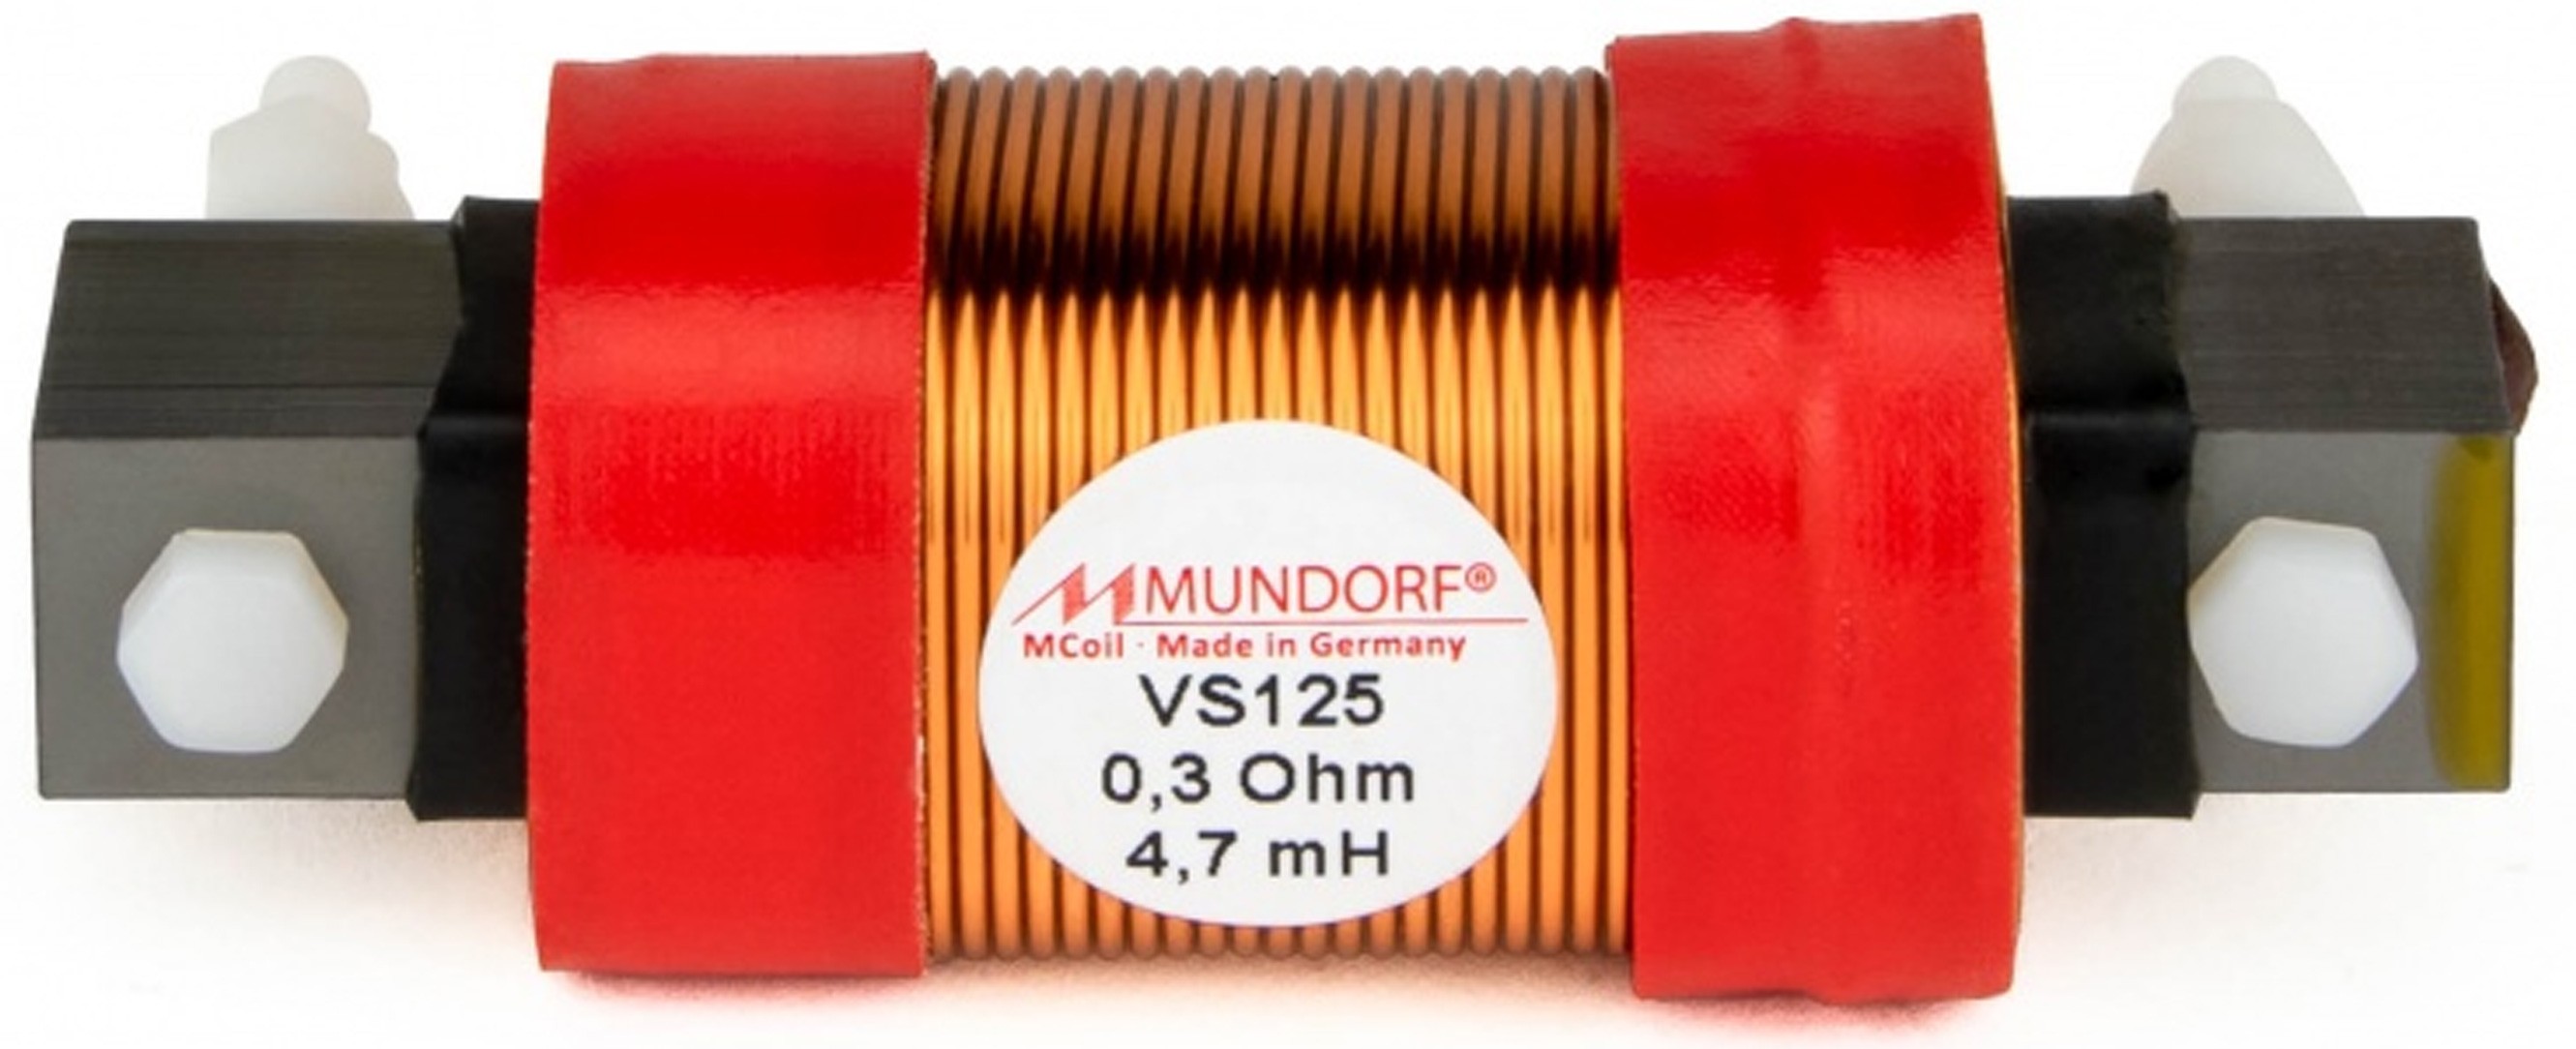 MUNDORF VS125-15 MCOIL ICORE Copper Coil Feron Core 15mH